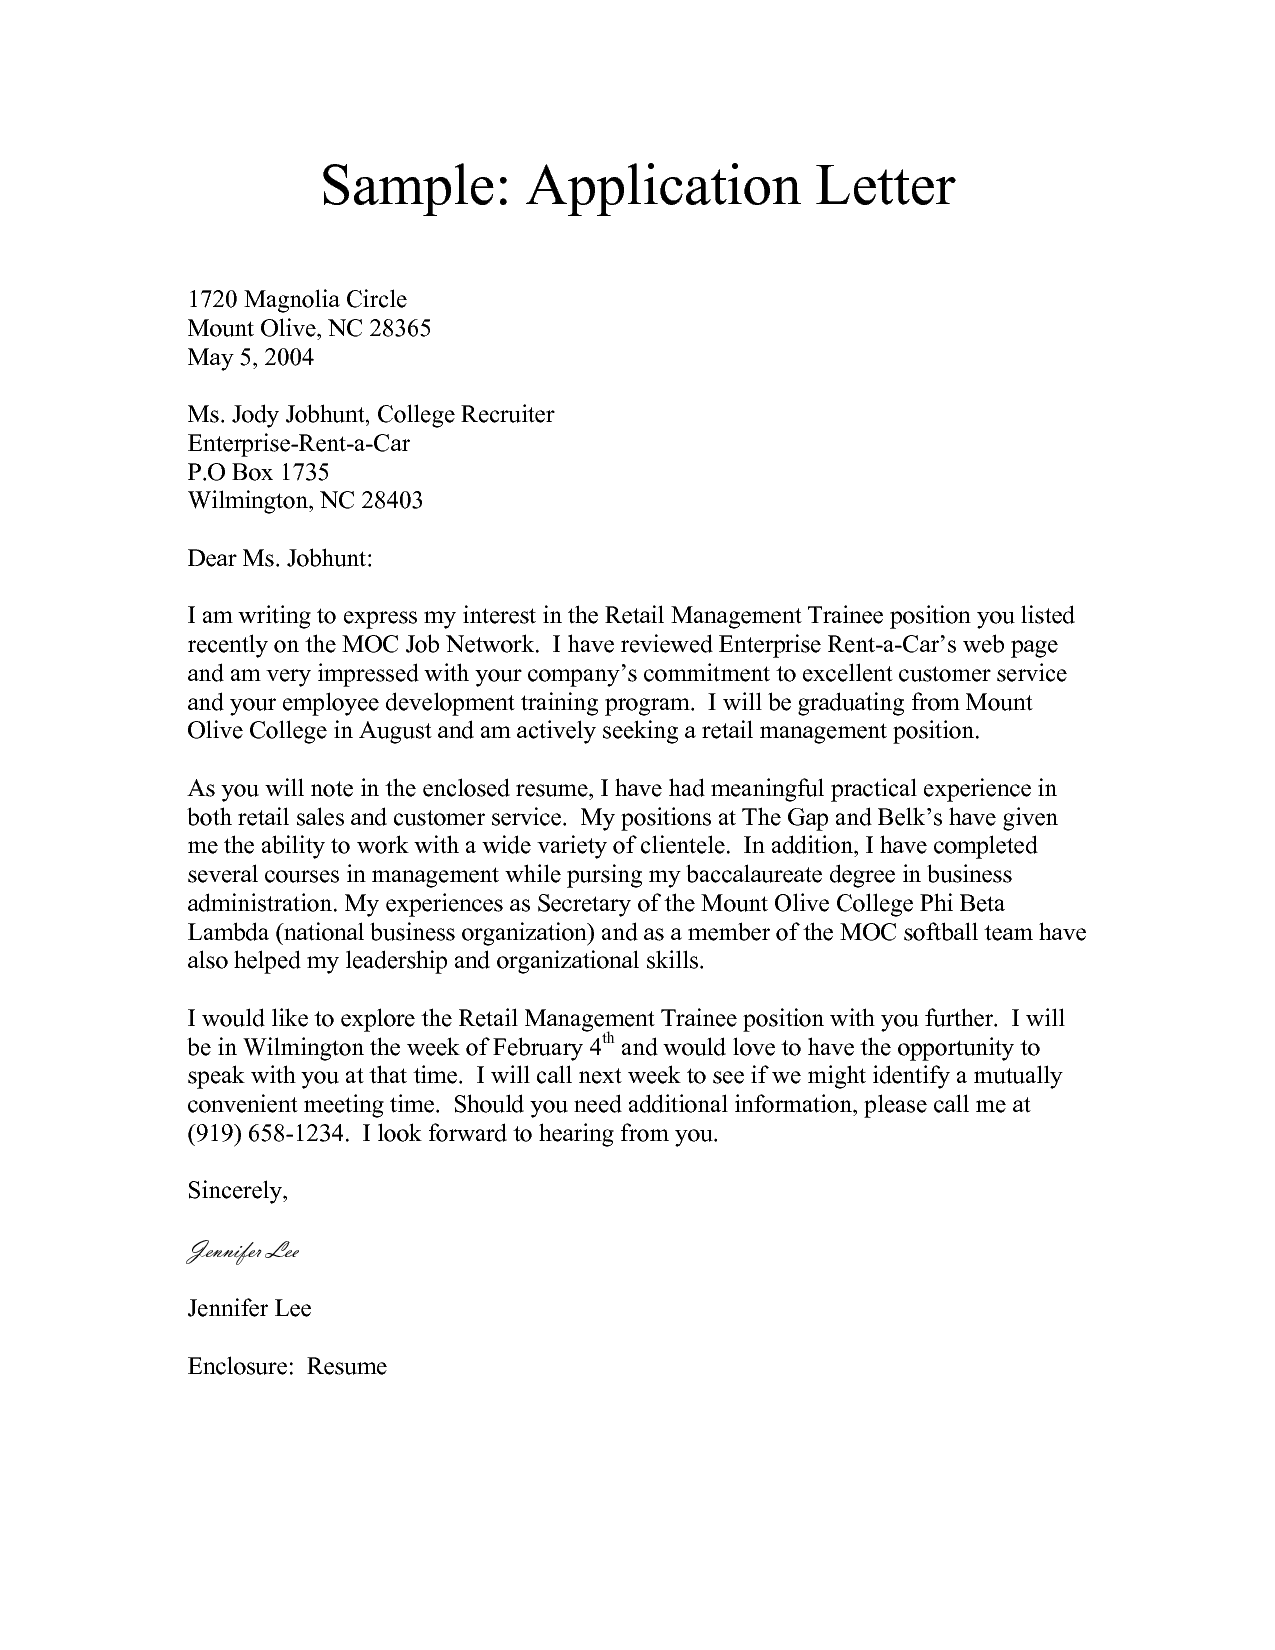 application letter sample 005